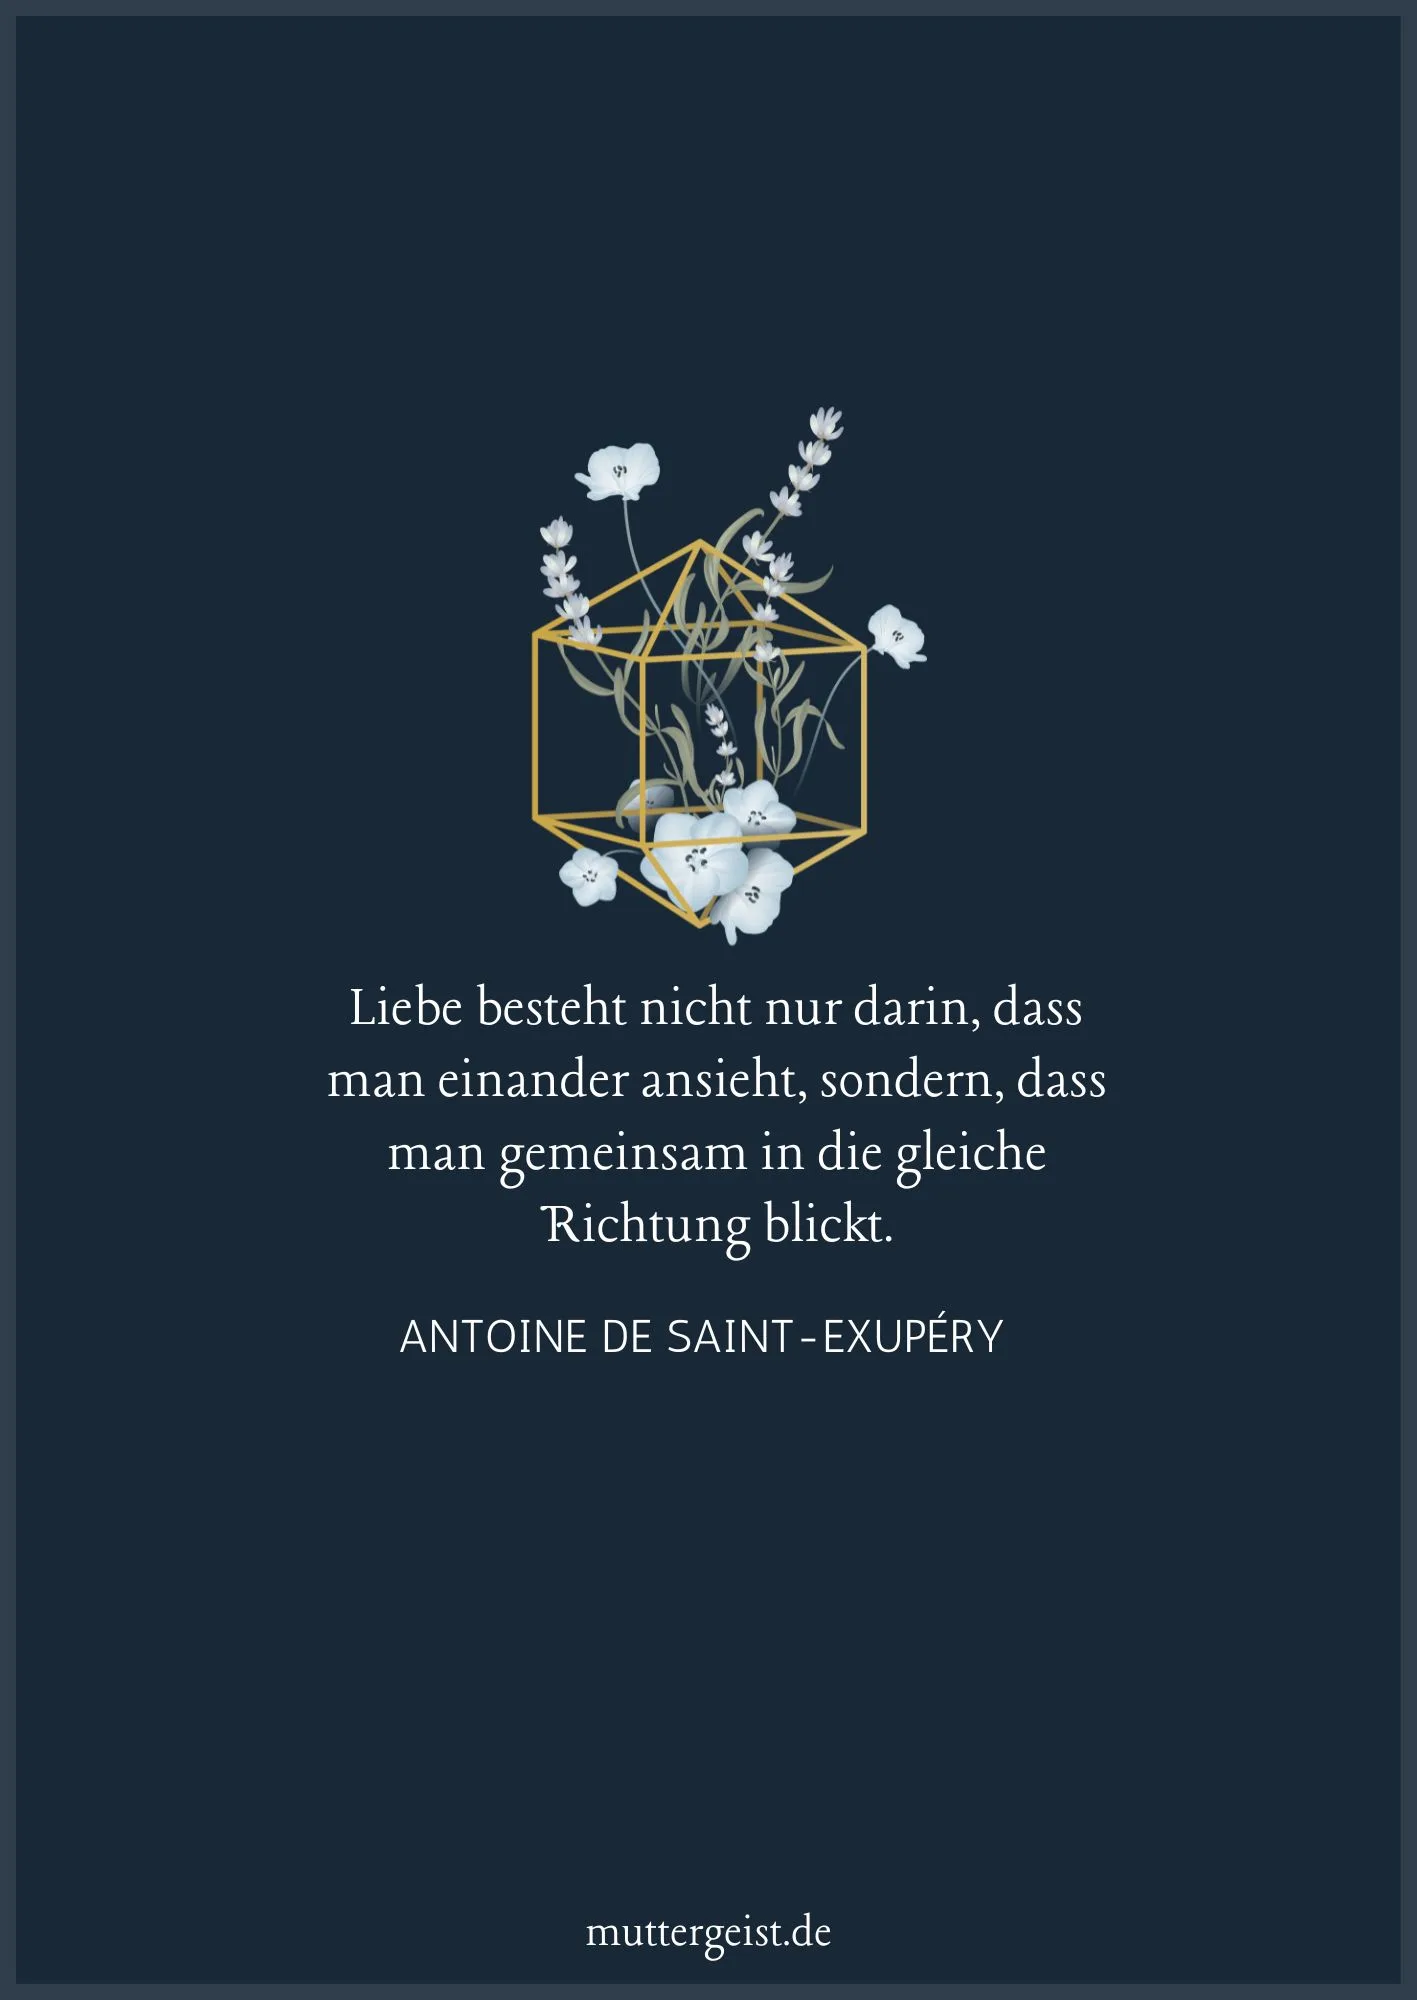 Zitat von Antoine de Saint-Exupéry zum 60. Hochzeitstag